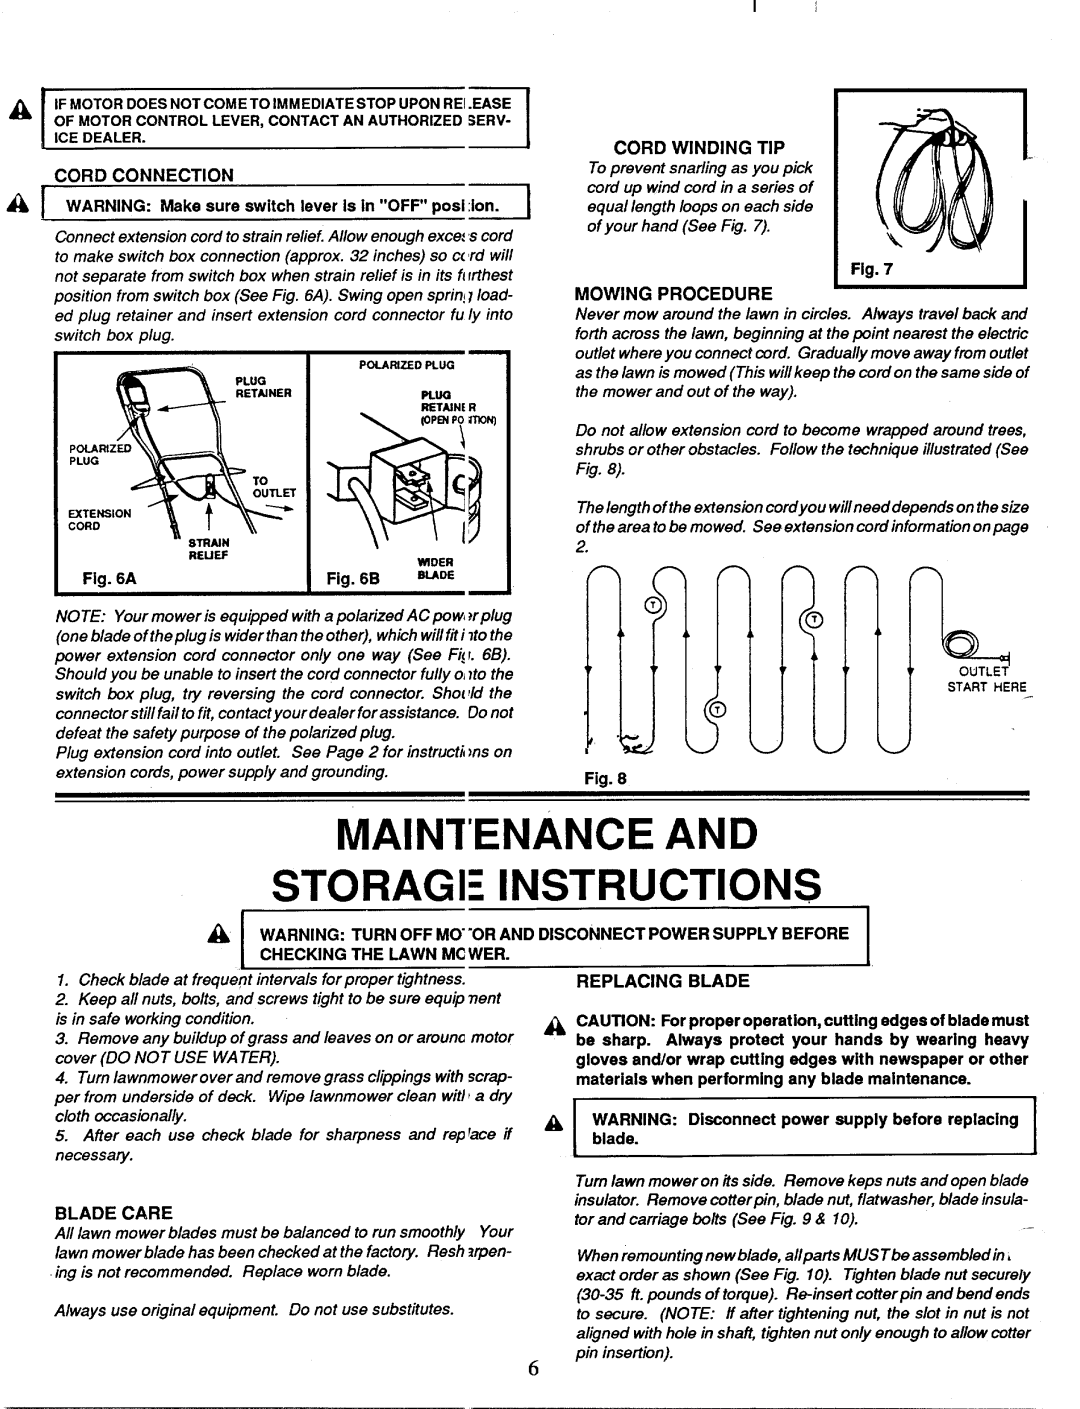 MTD 181-184D002 manual 